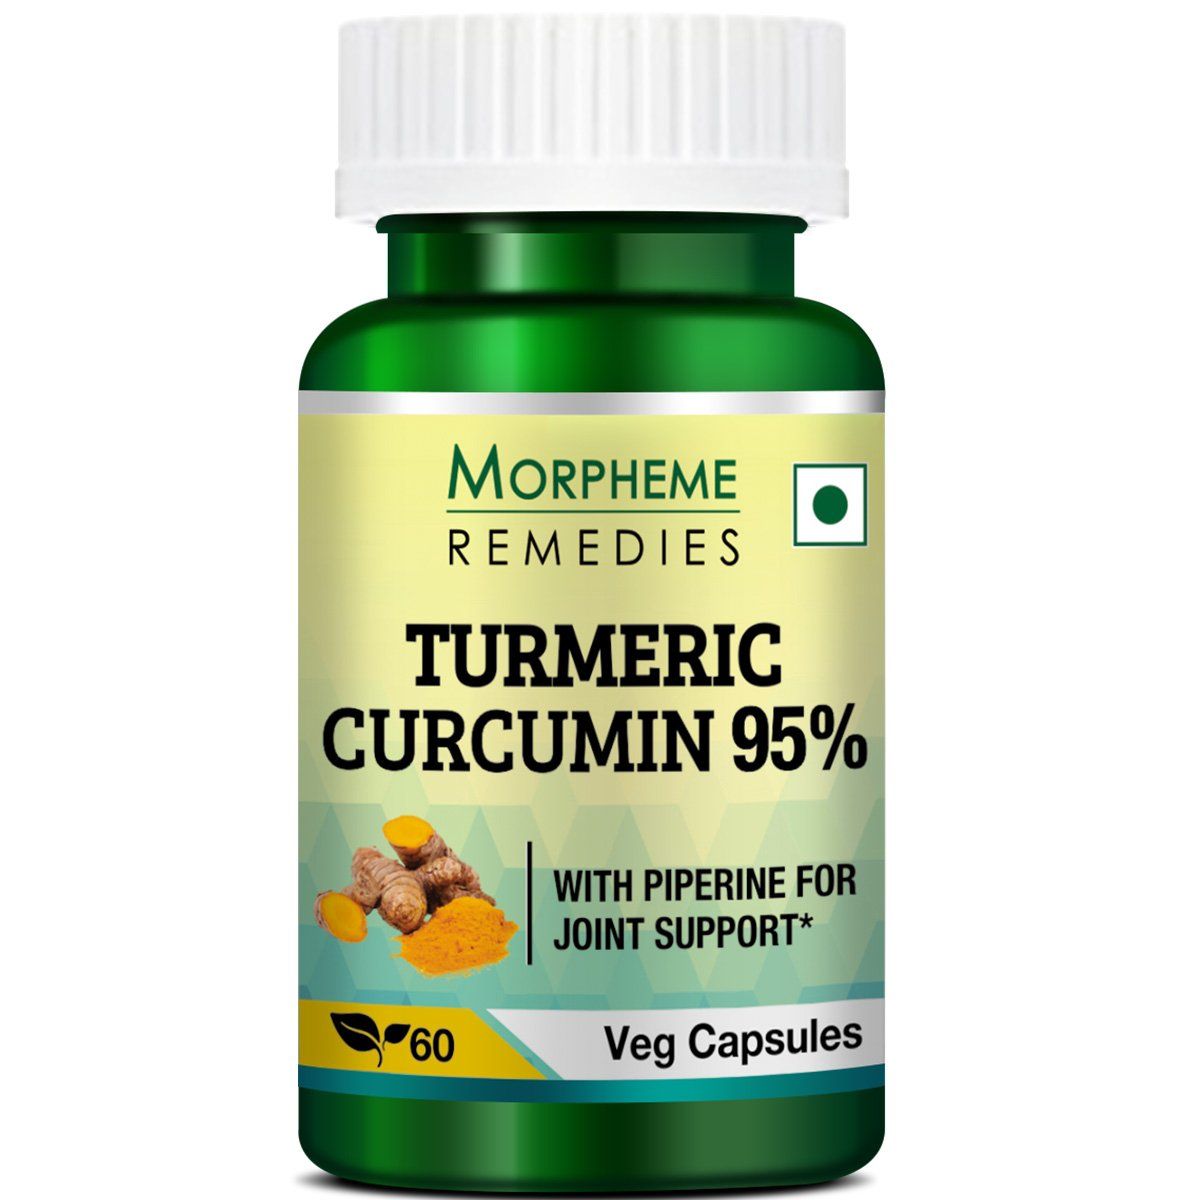 Morpheme Remedies Turmeric Curcumin 95% Image